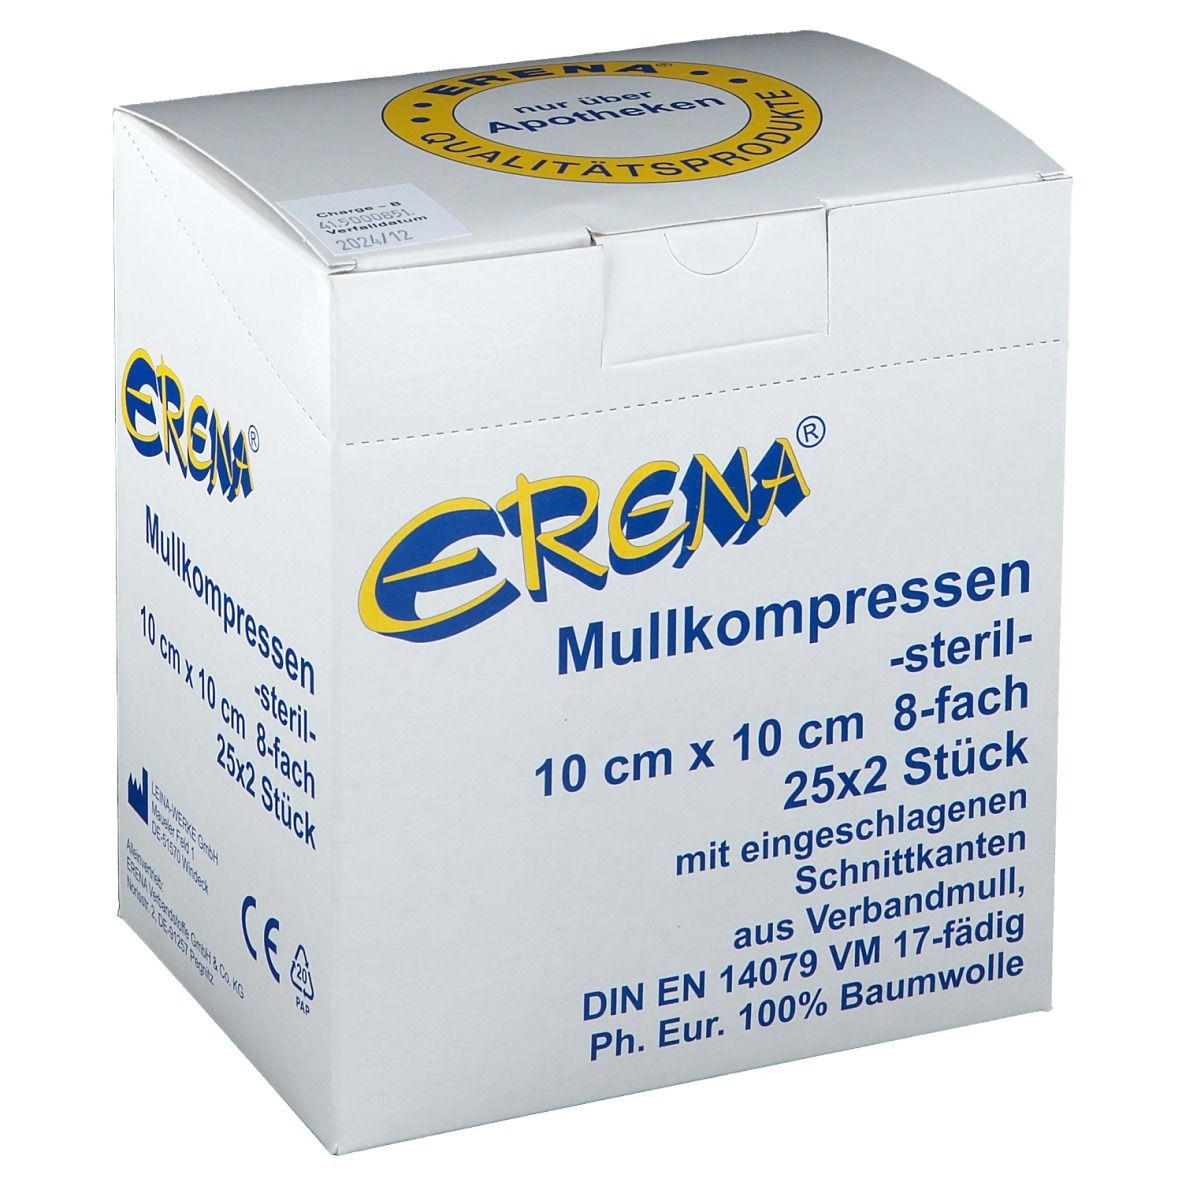 Erena® Mullkompressen 10 x 10 cm steril 8-fach